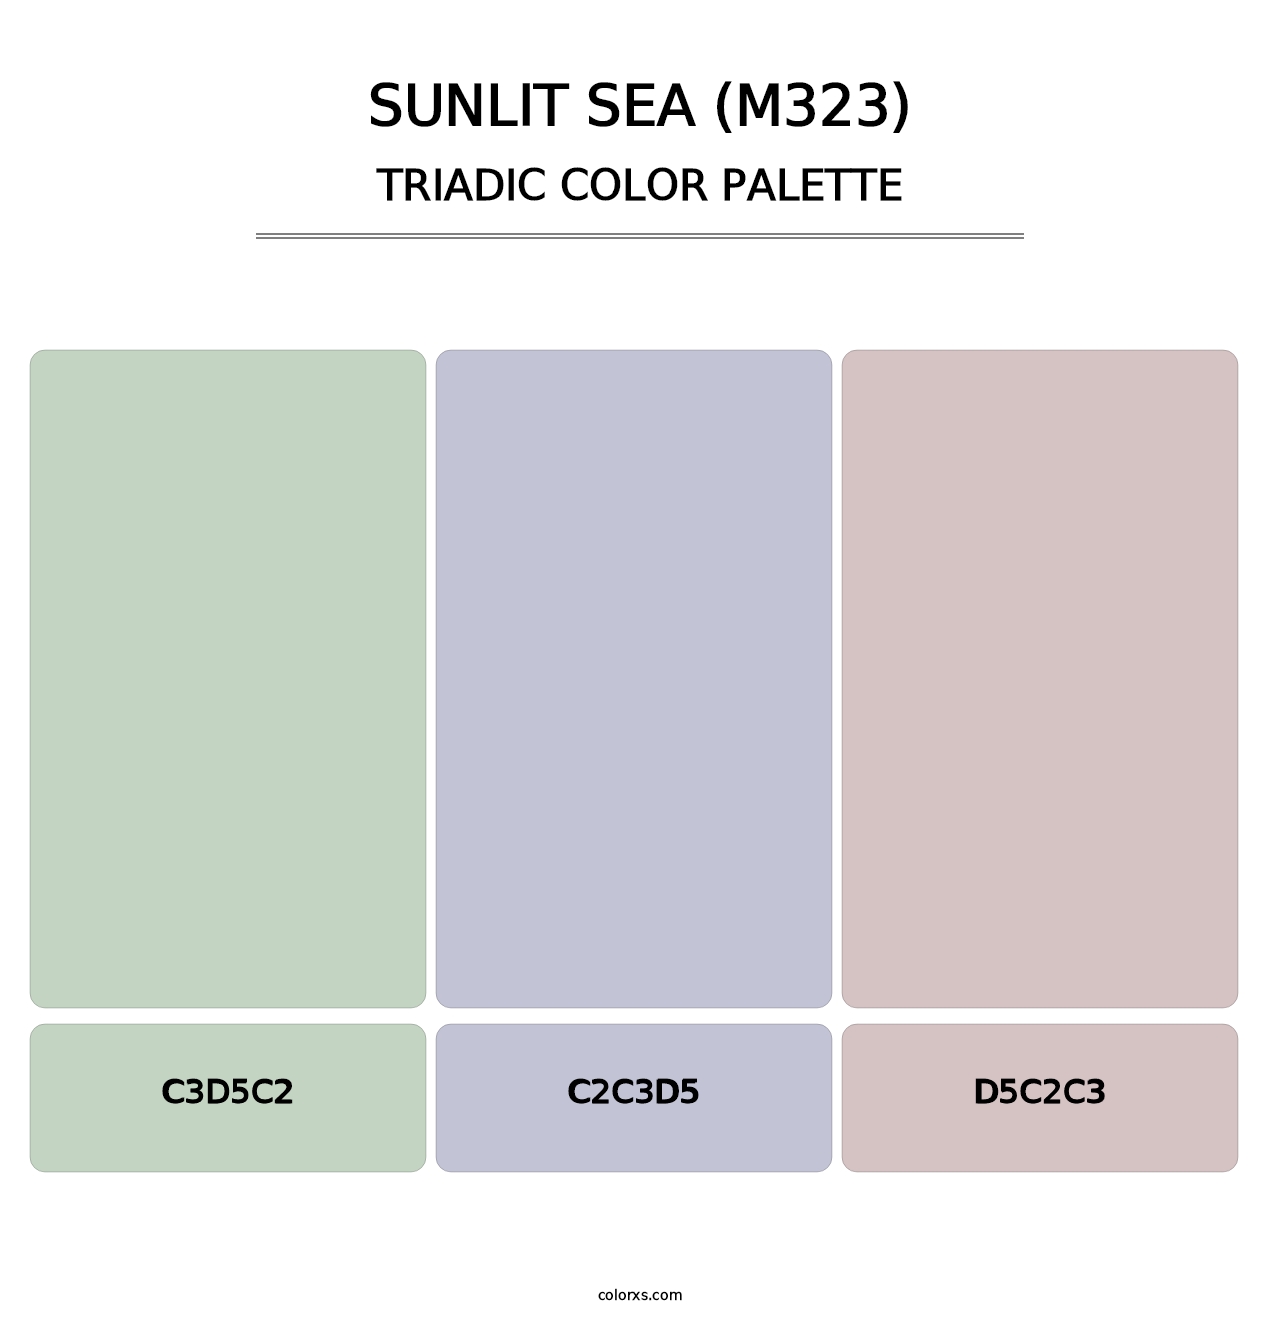 Sunlit Sea (M323) - Triadic Color Palette